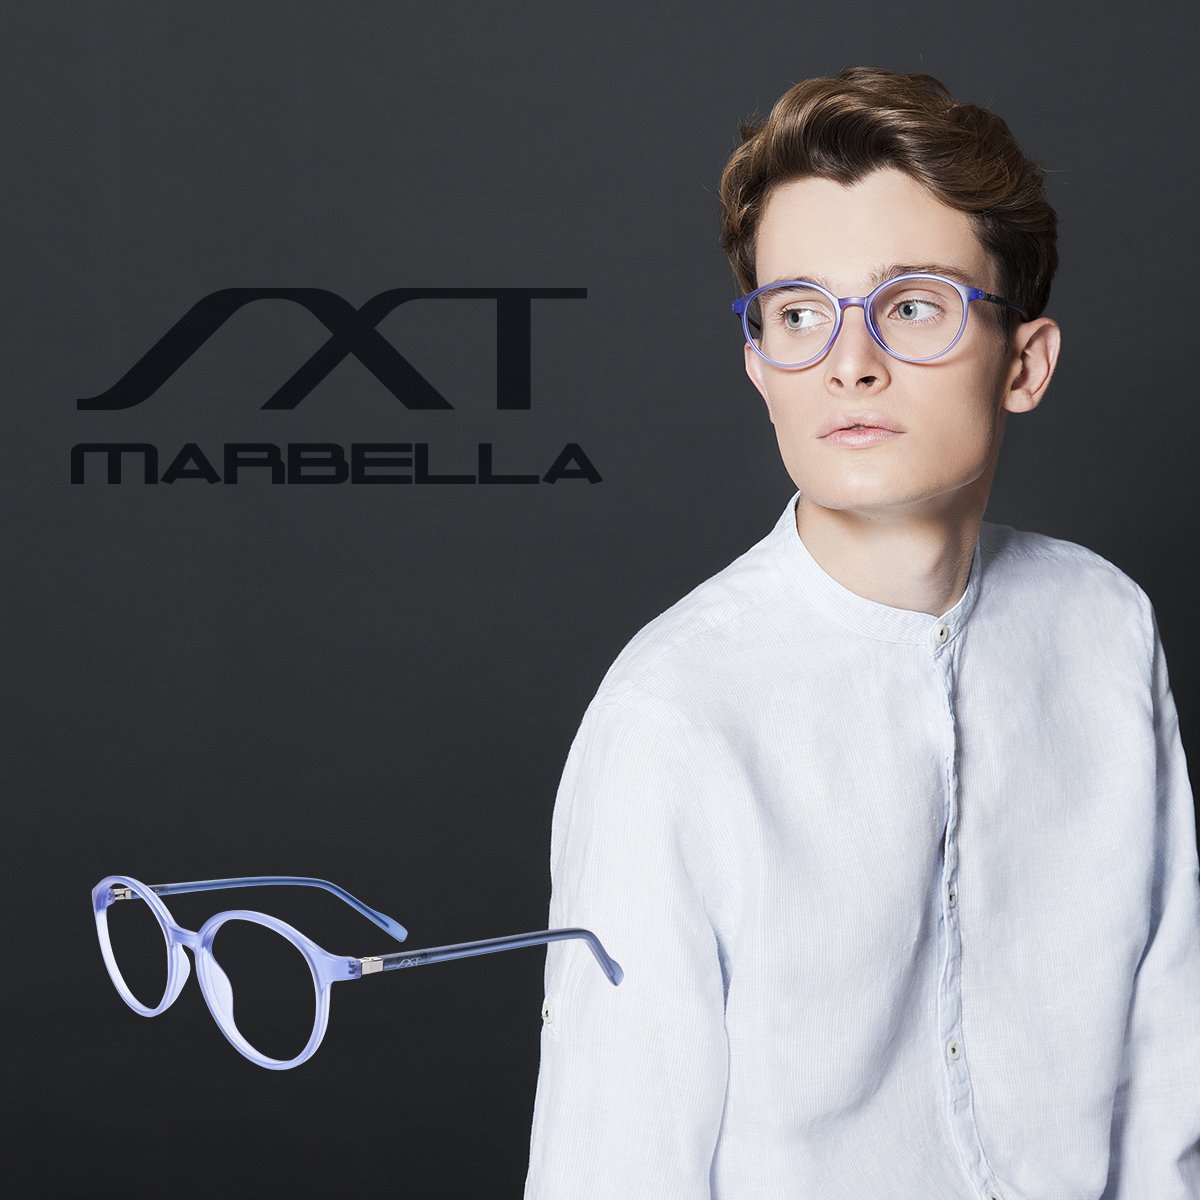 Soloptical on Twitter: "La #colección de #gafas SXT Marbella ahora, mejor nunca!Descúbrela en tu tienda #Soloptical más cercana -&gt; https://t.co/WjnlxugyLt https://t.co/QKowa1AD5m" / Twitter